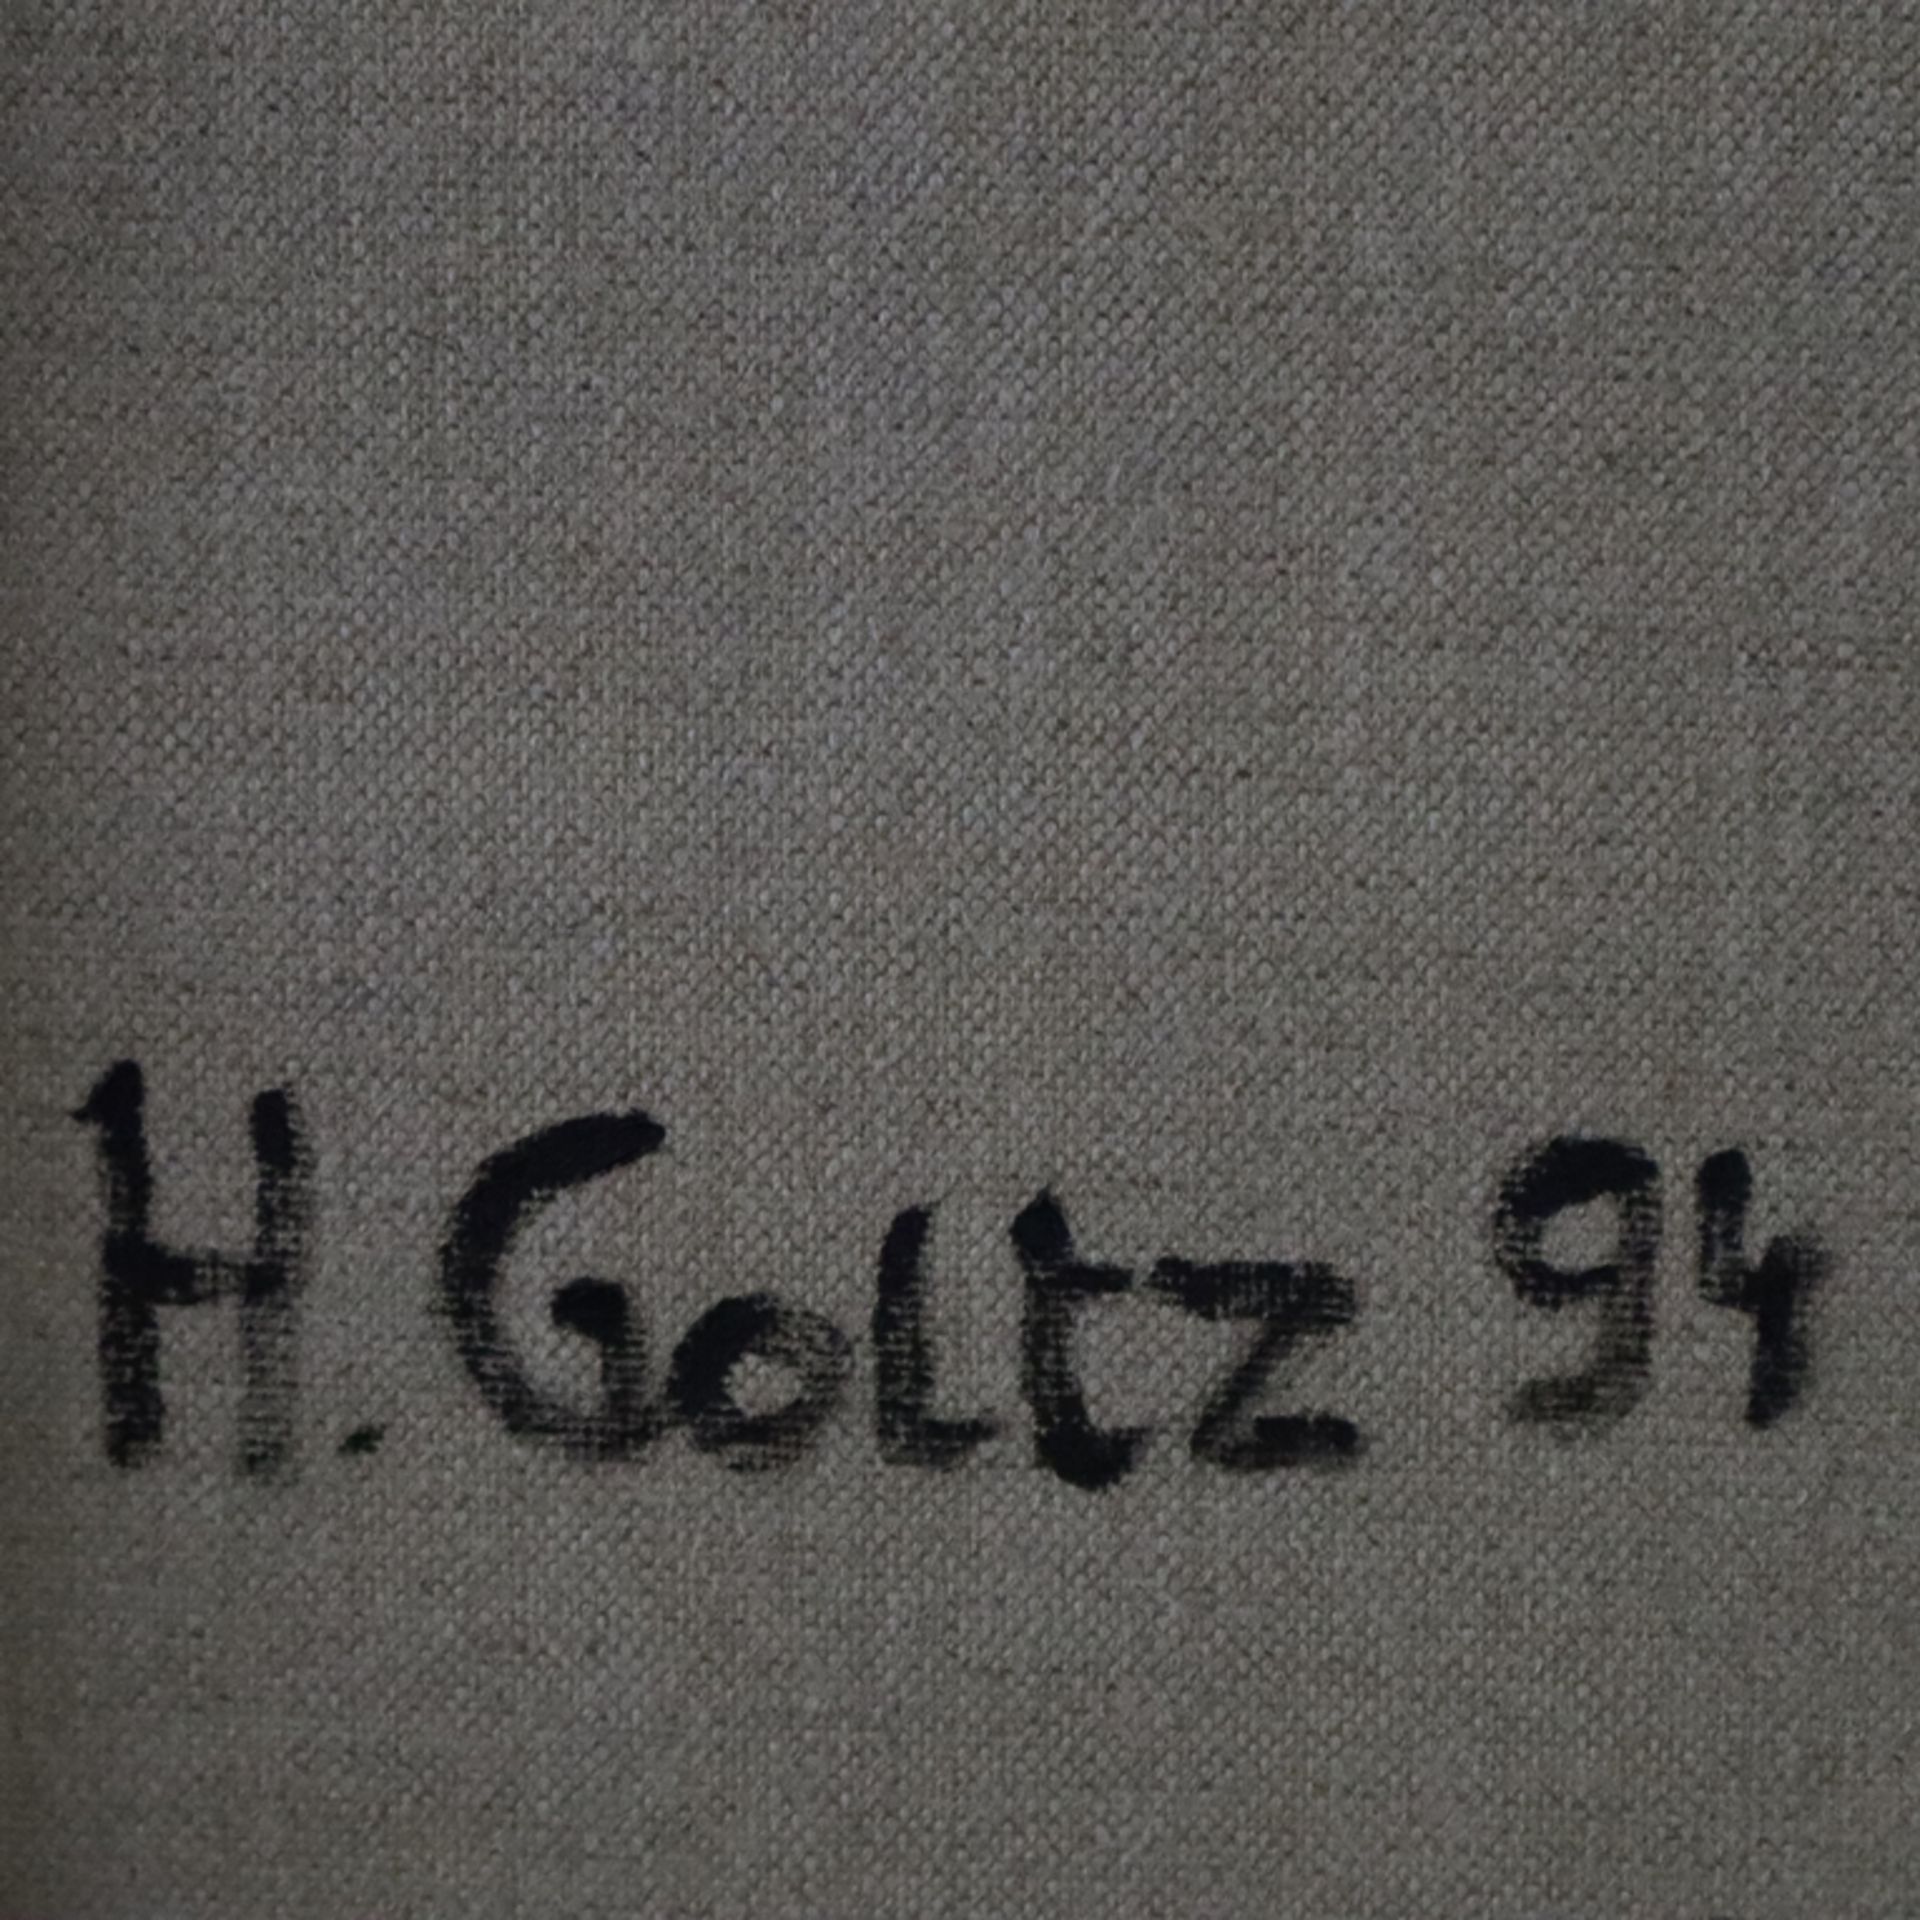 Goltz, Hans Graf von der (1926-2018) - Abstraktes Bild, 1994, Öl auf Leinwand, rückseitig signiert - Image 10 of 10